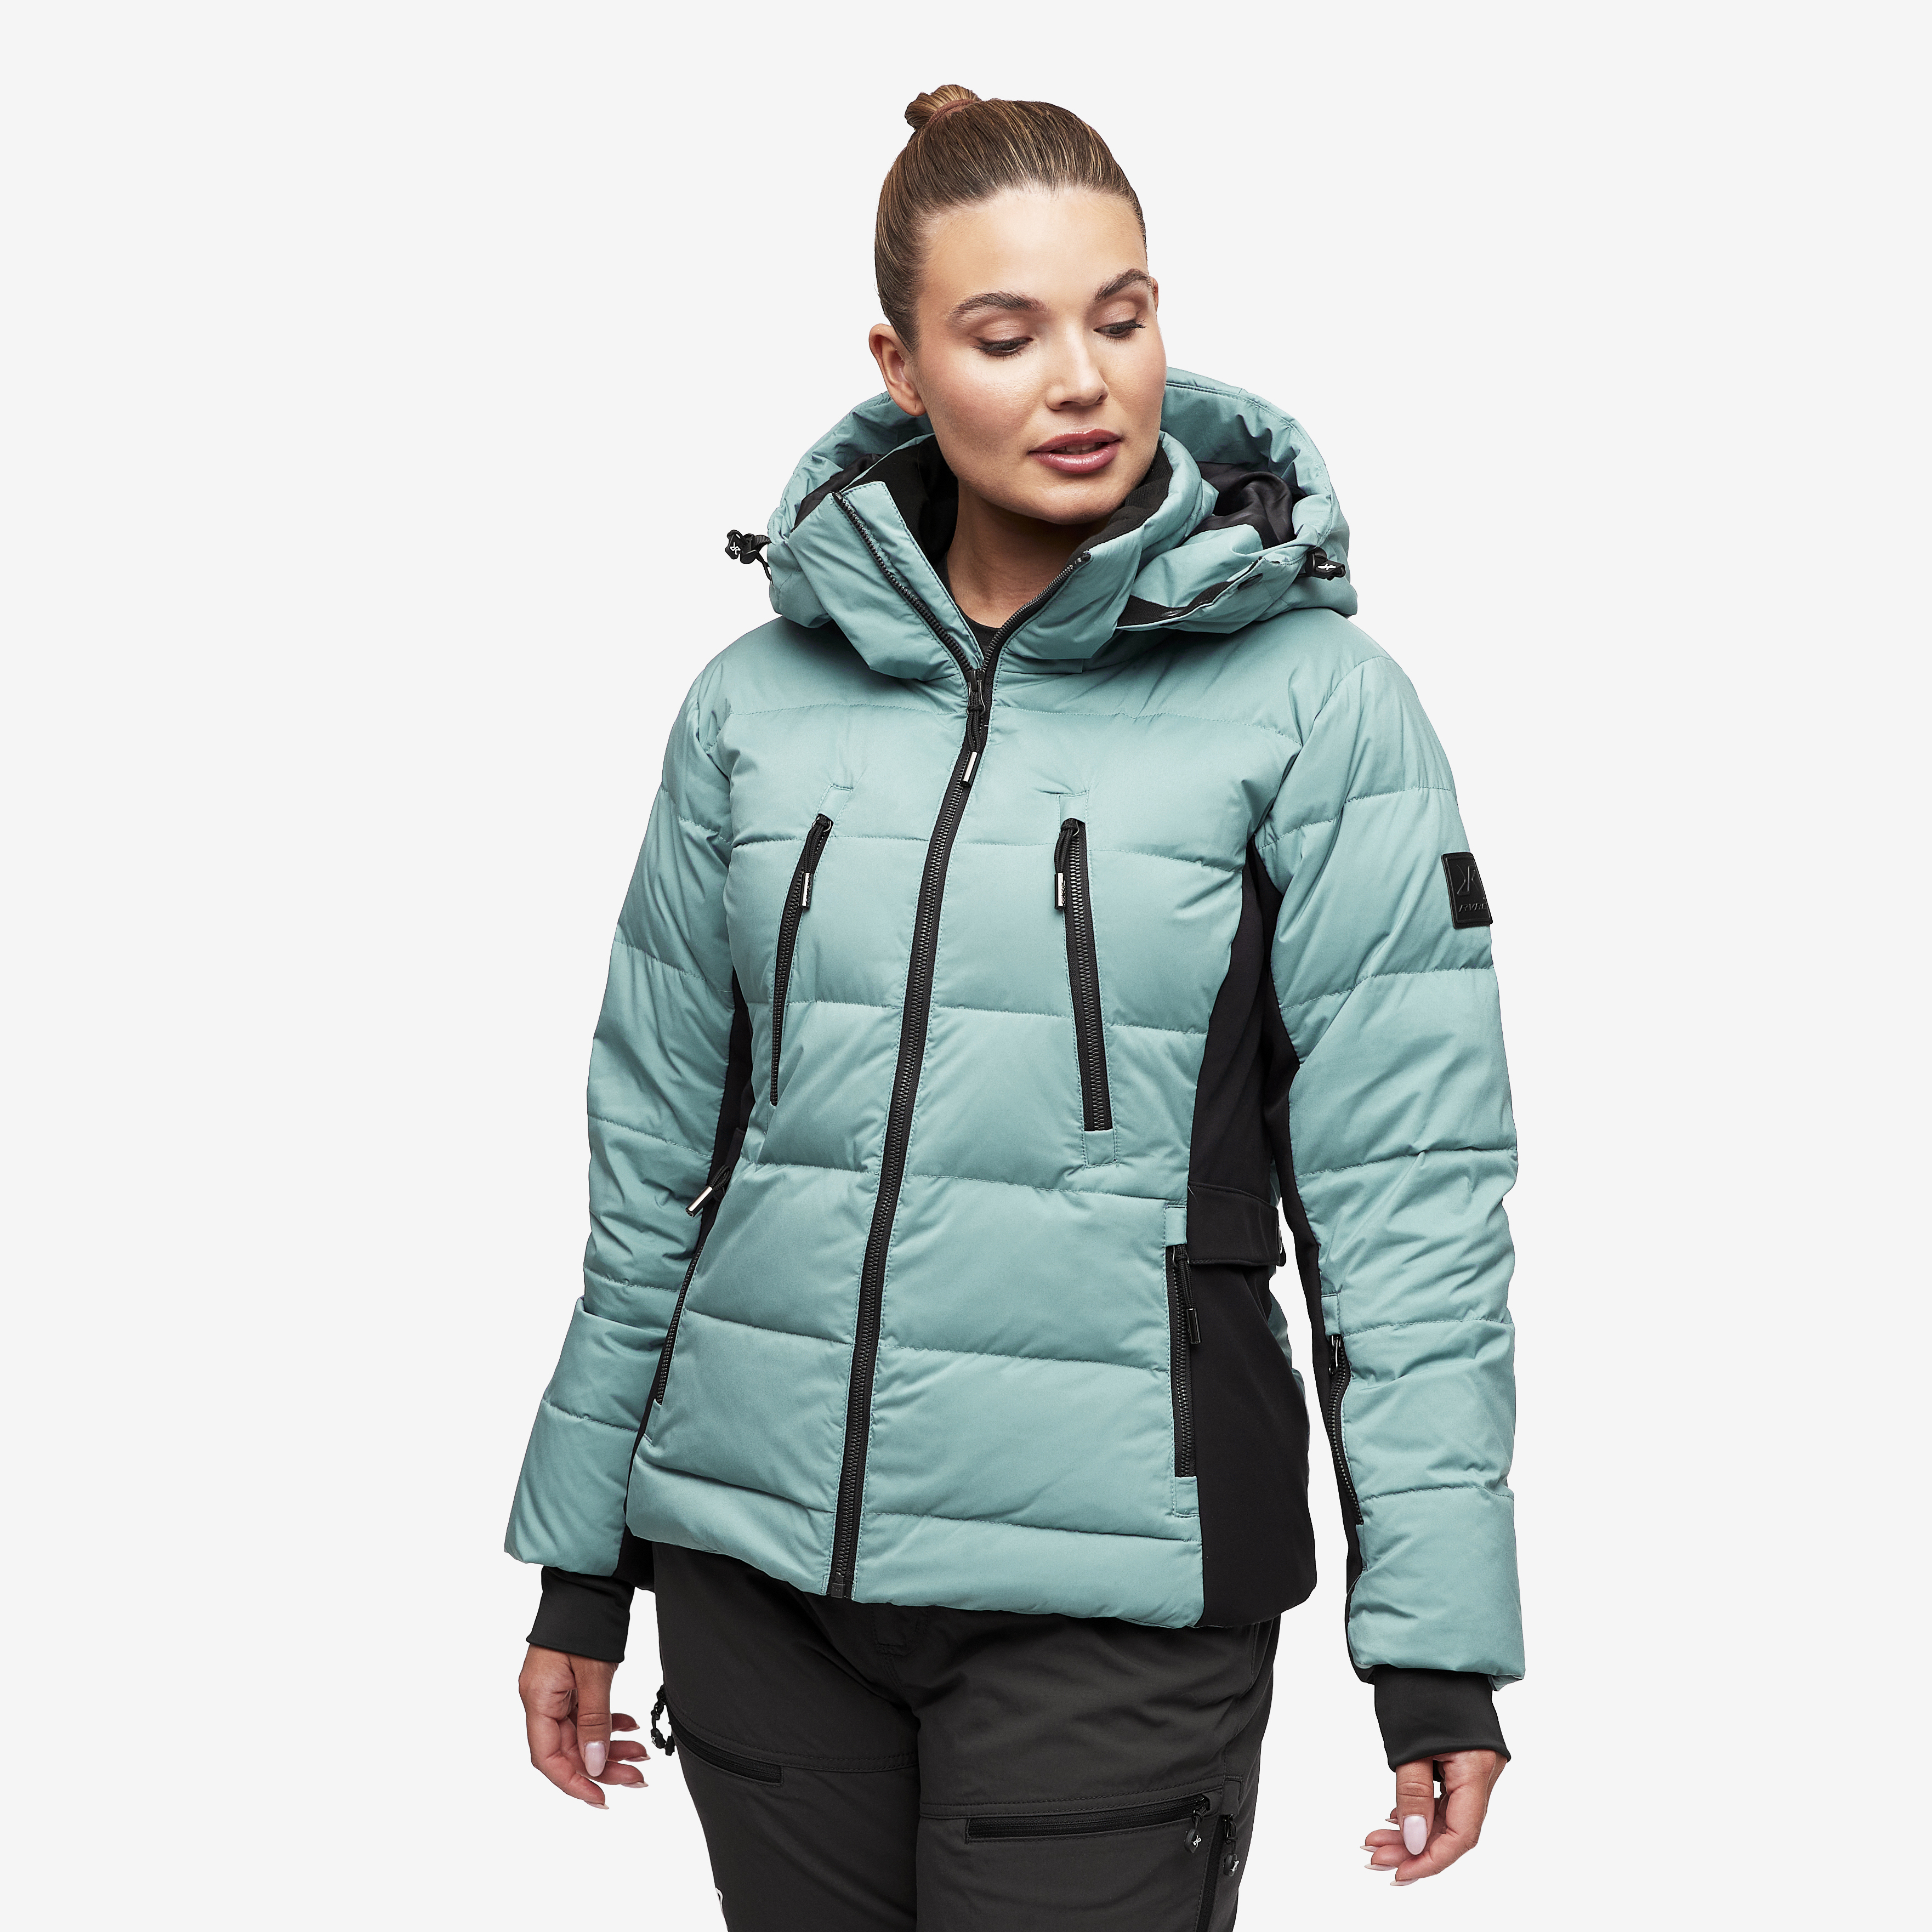 Igloo Jacket Arctic Women